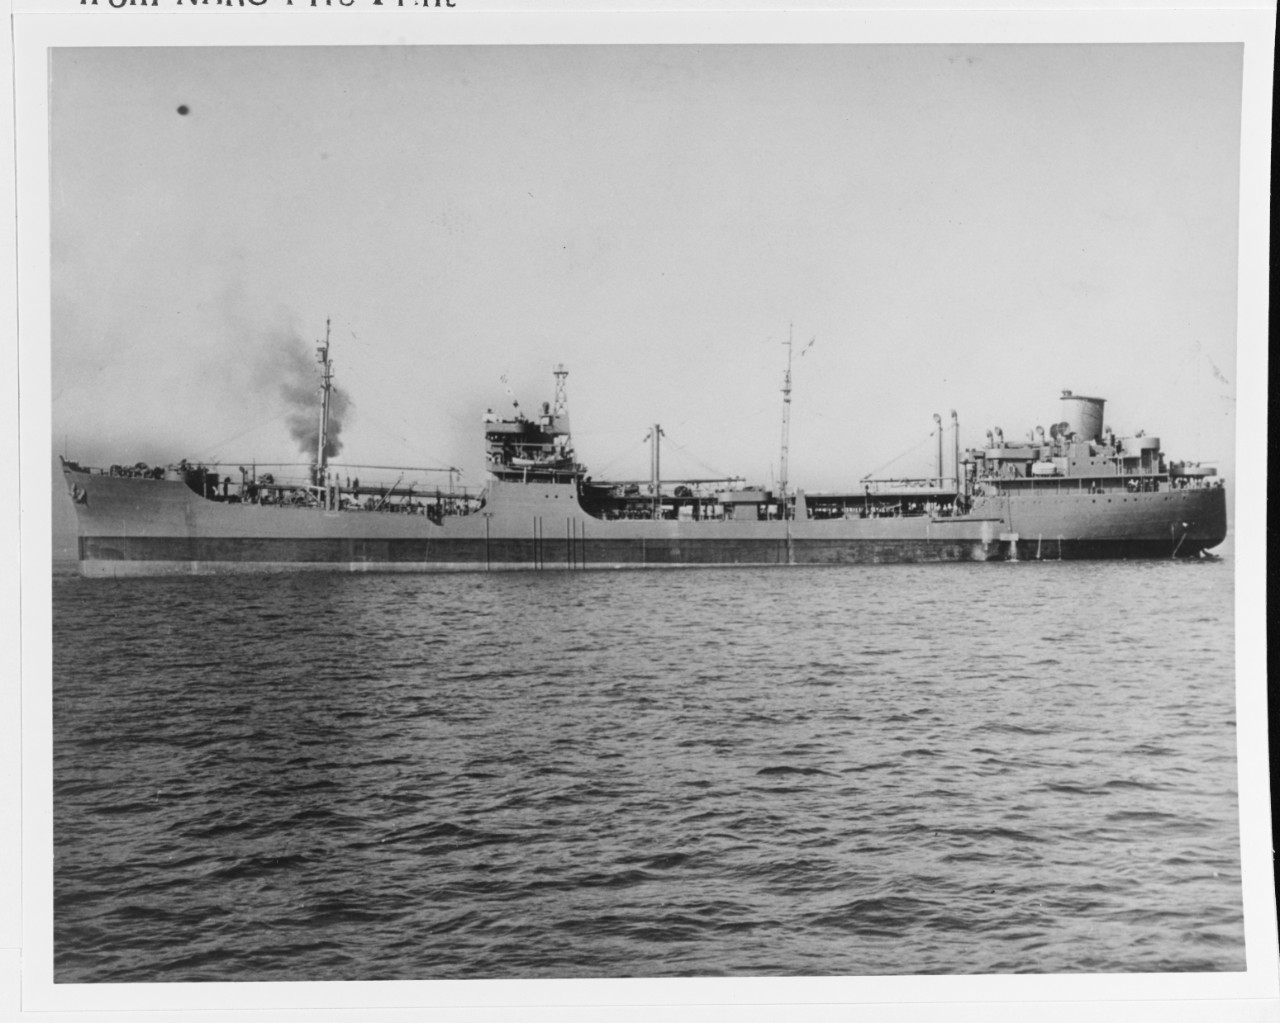 USS PATUXENT (AO-44)